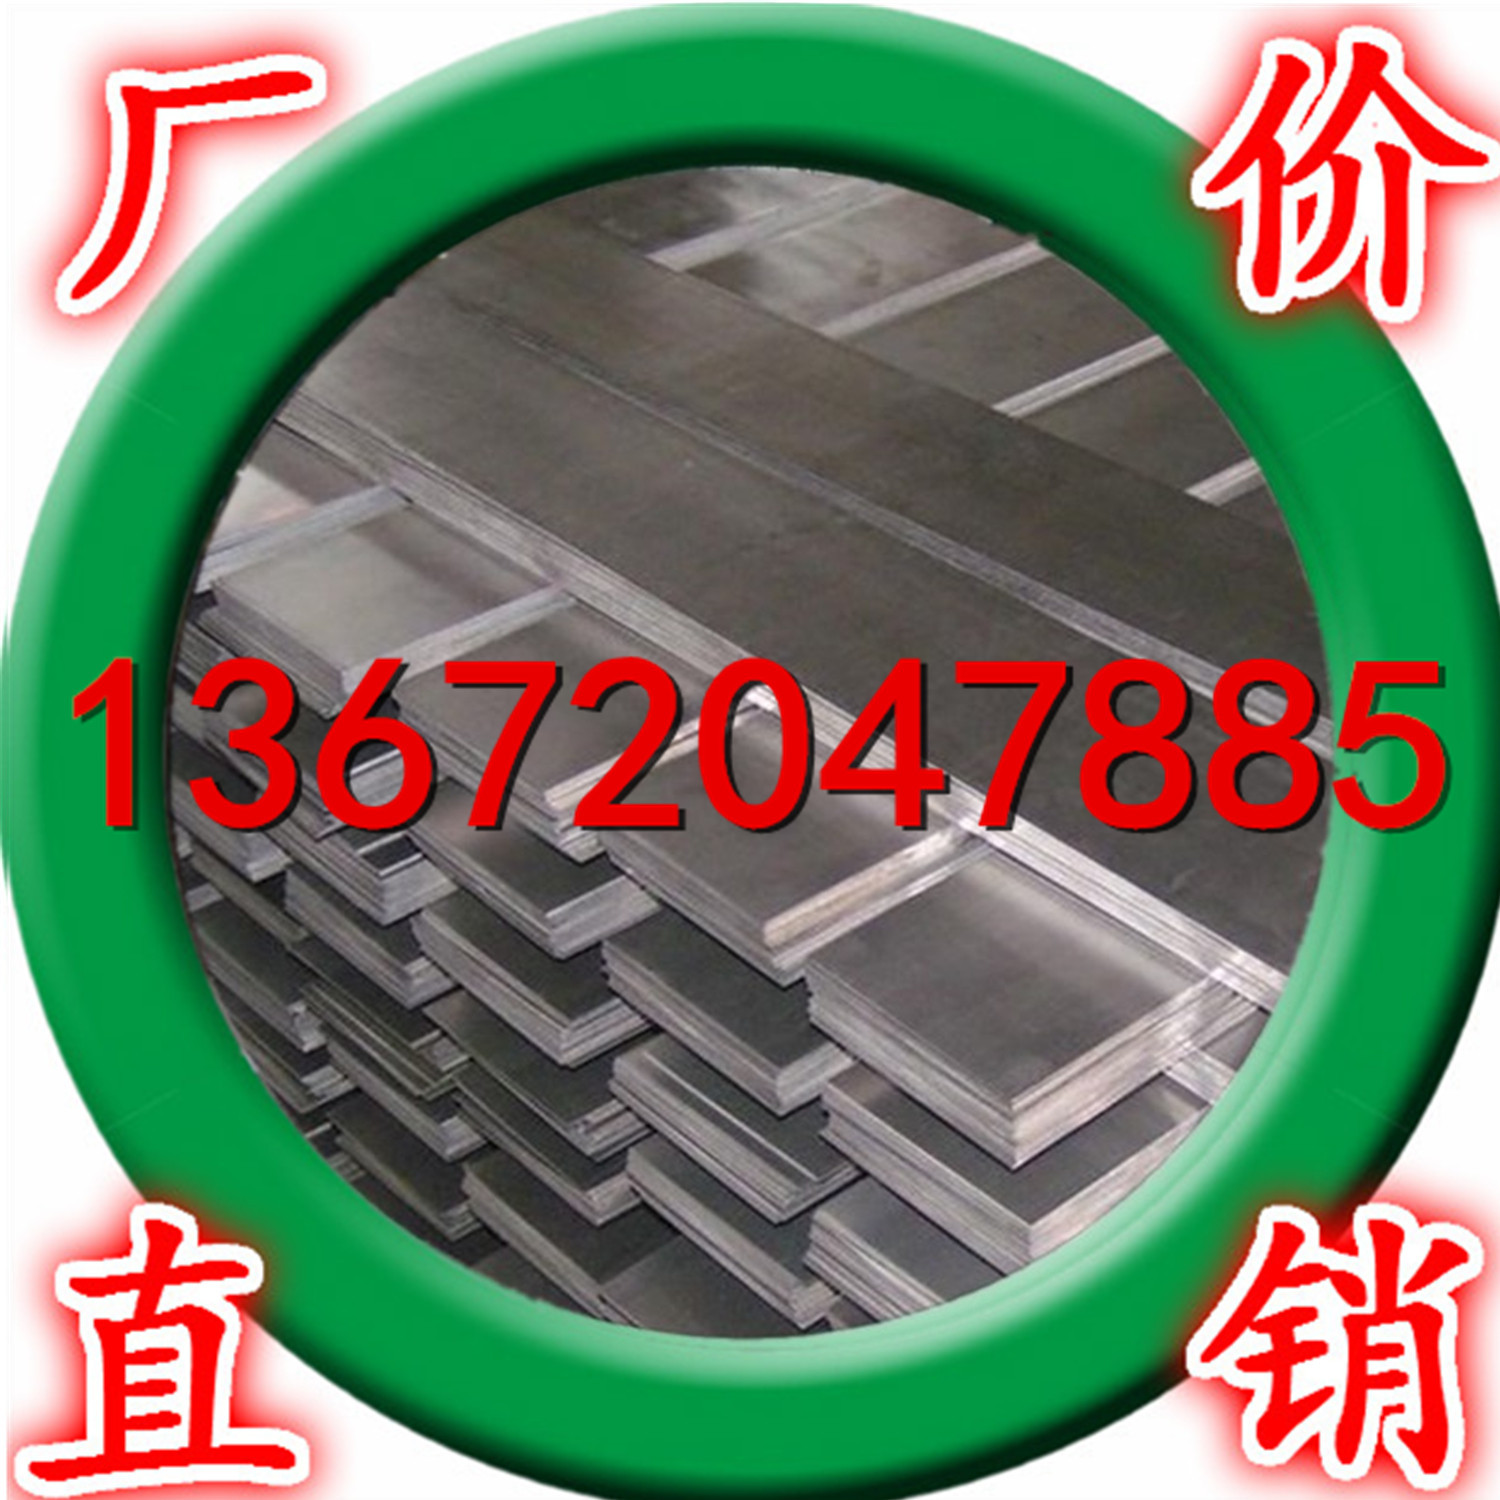 厂家低价大量供应防锈耐腐蚀3003铝排 工业铝排 3003铝排 铝扁条